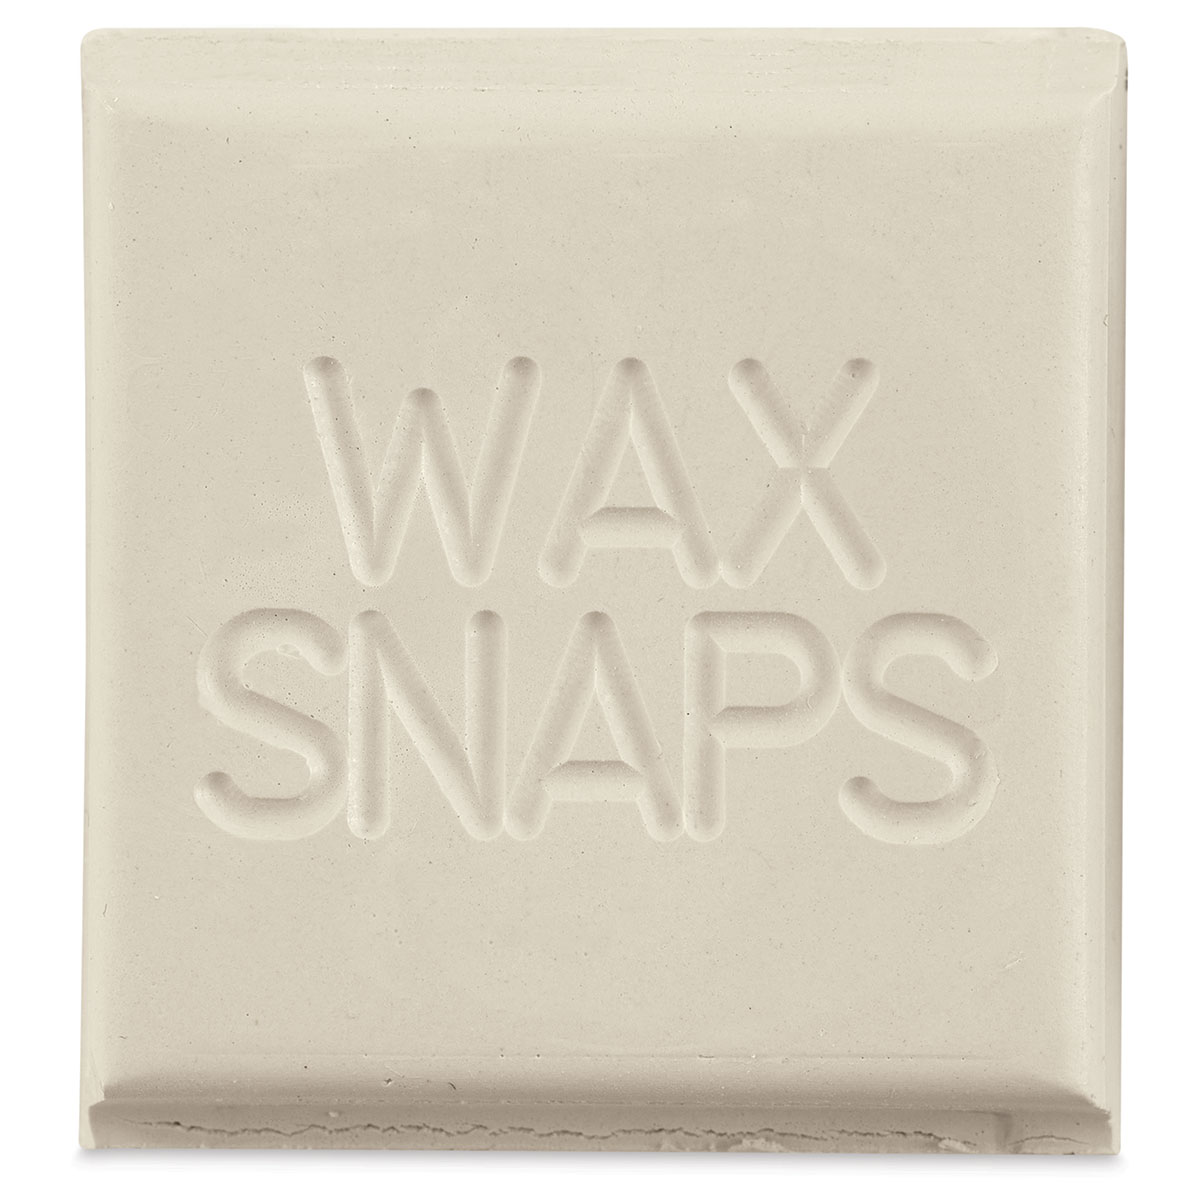 Enkaustikos Wax Snaps Encaustic Paints - Seattle Grunge, 40 ml, Cake